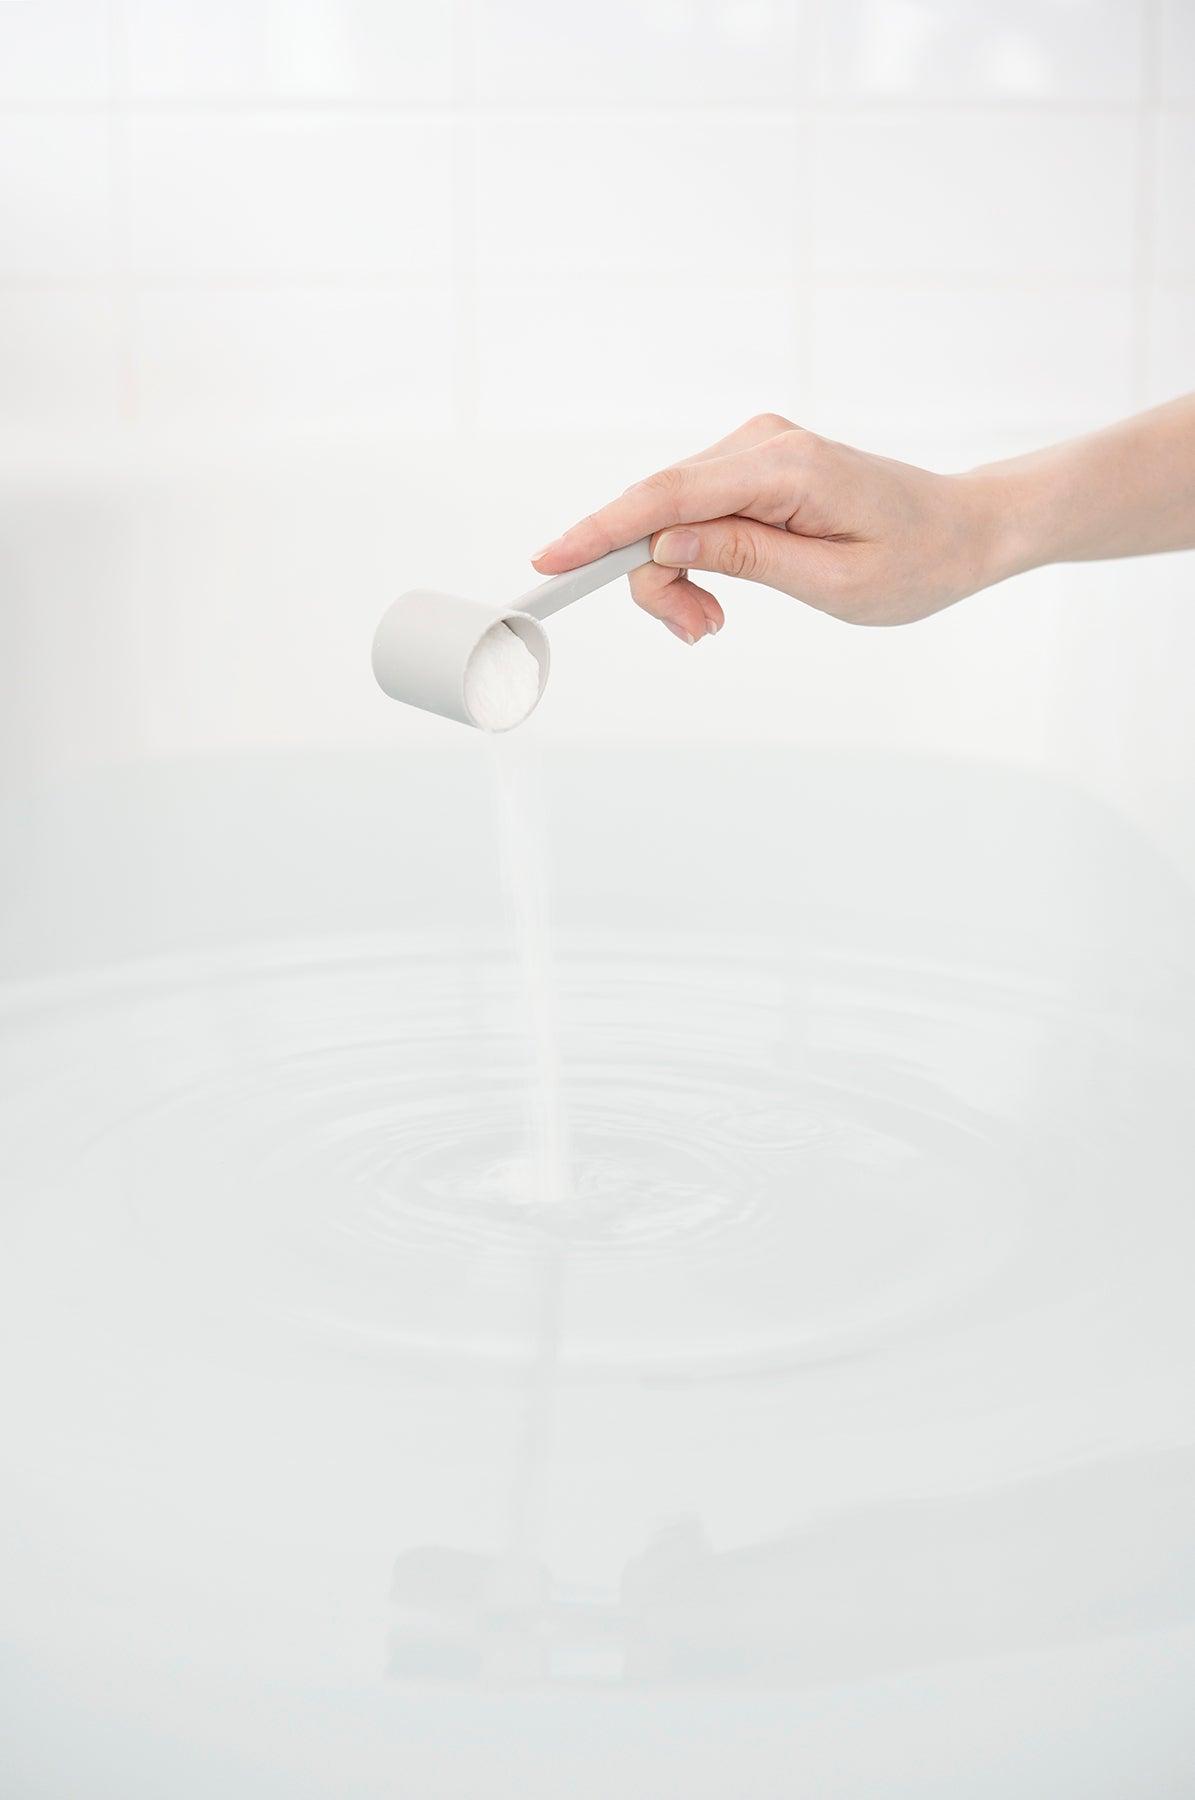 HAA for bath 900g - 溫泉礦物質入浴劑